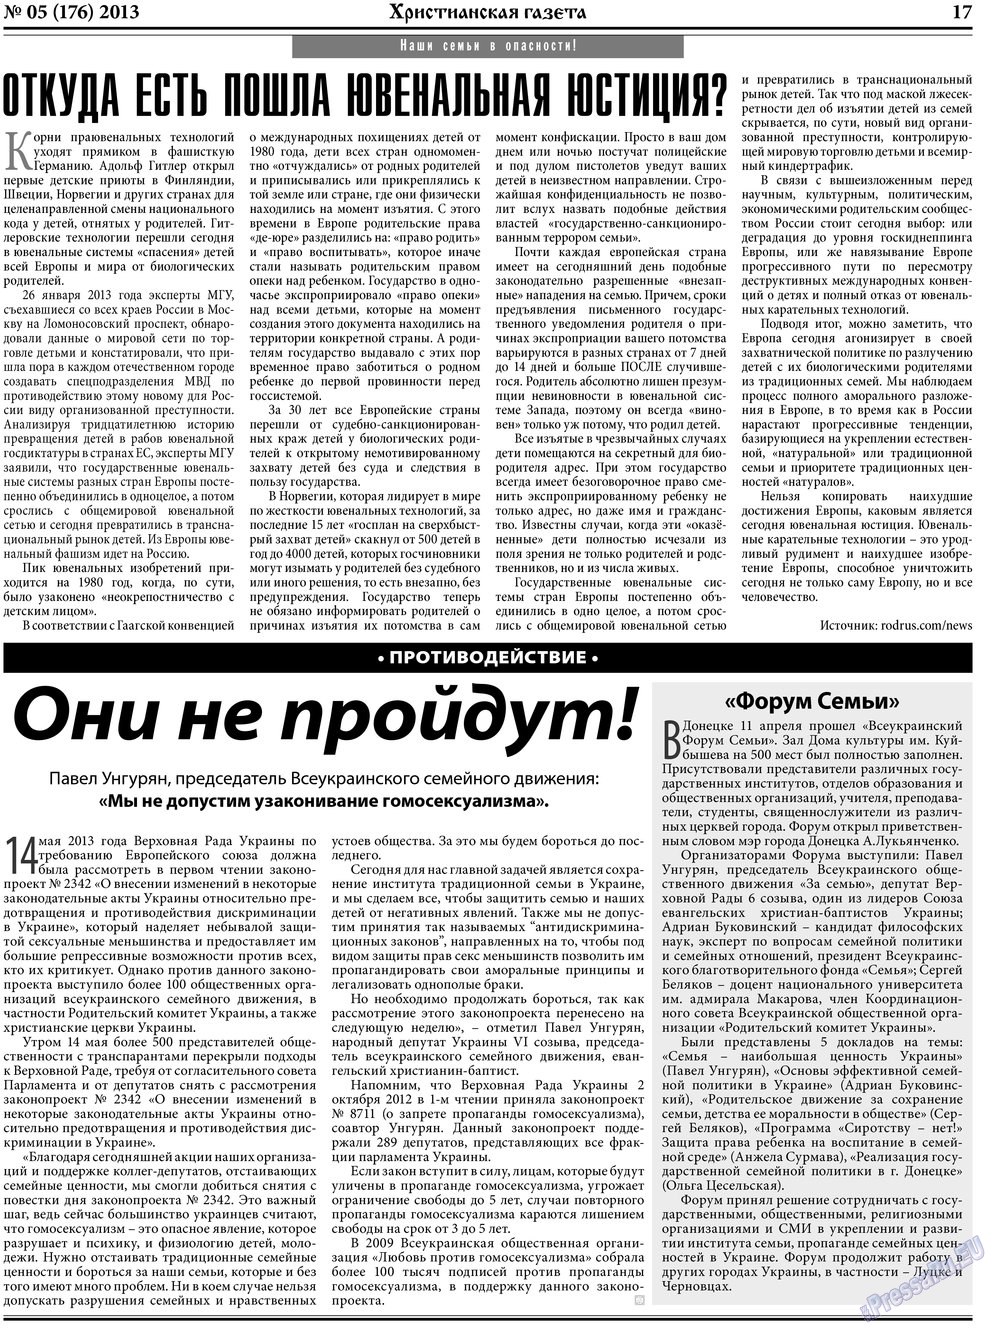 Христианская газета, газета. 2013 №5 стр.25